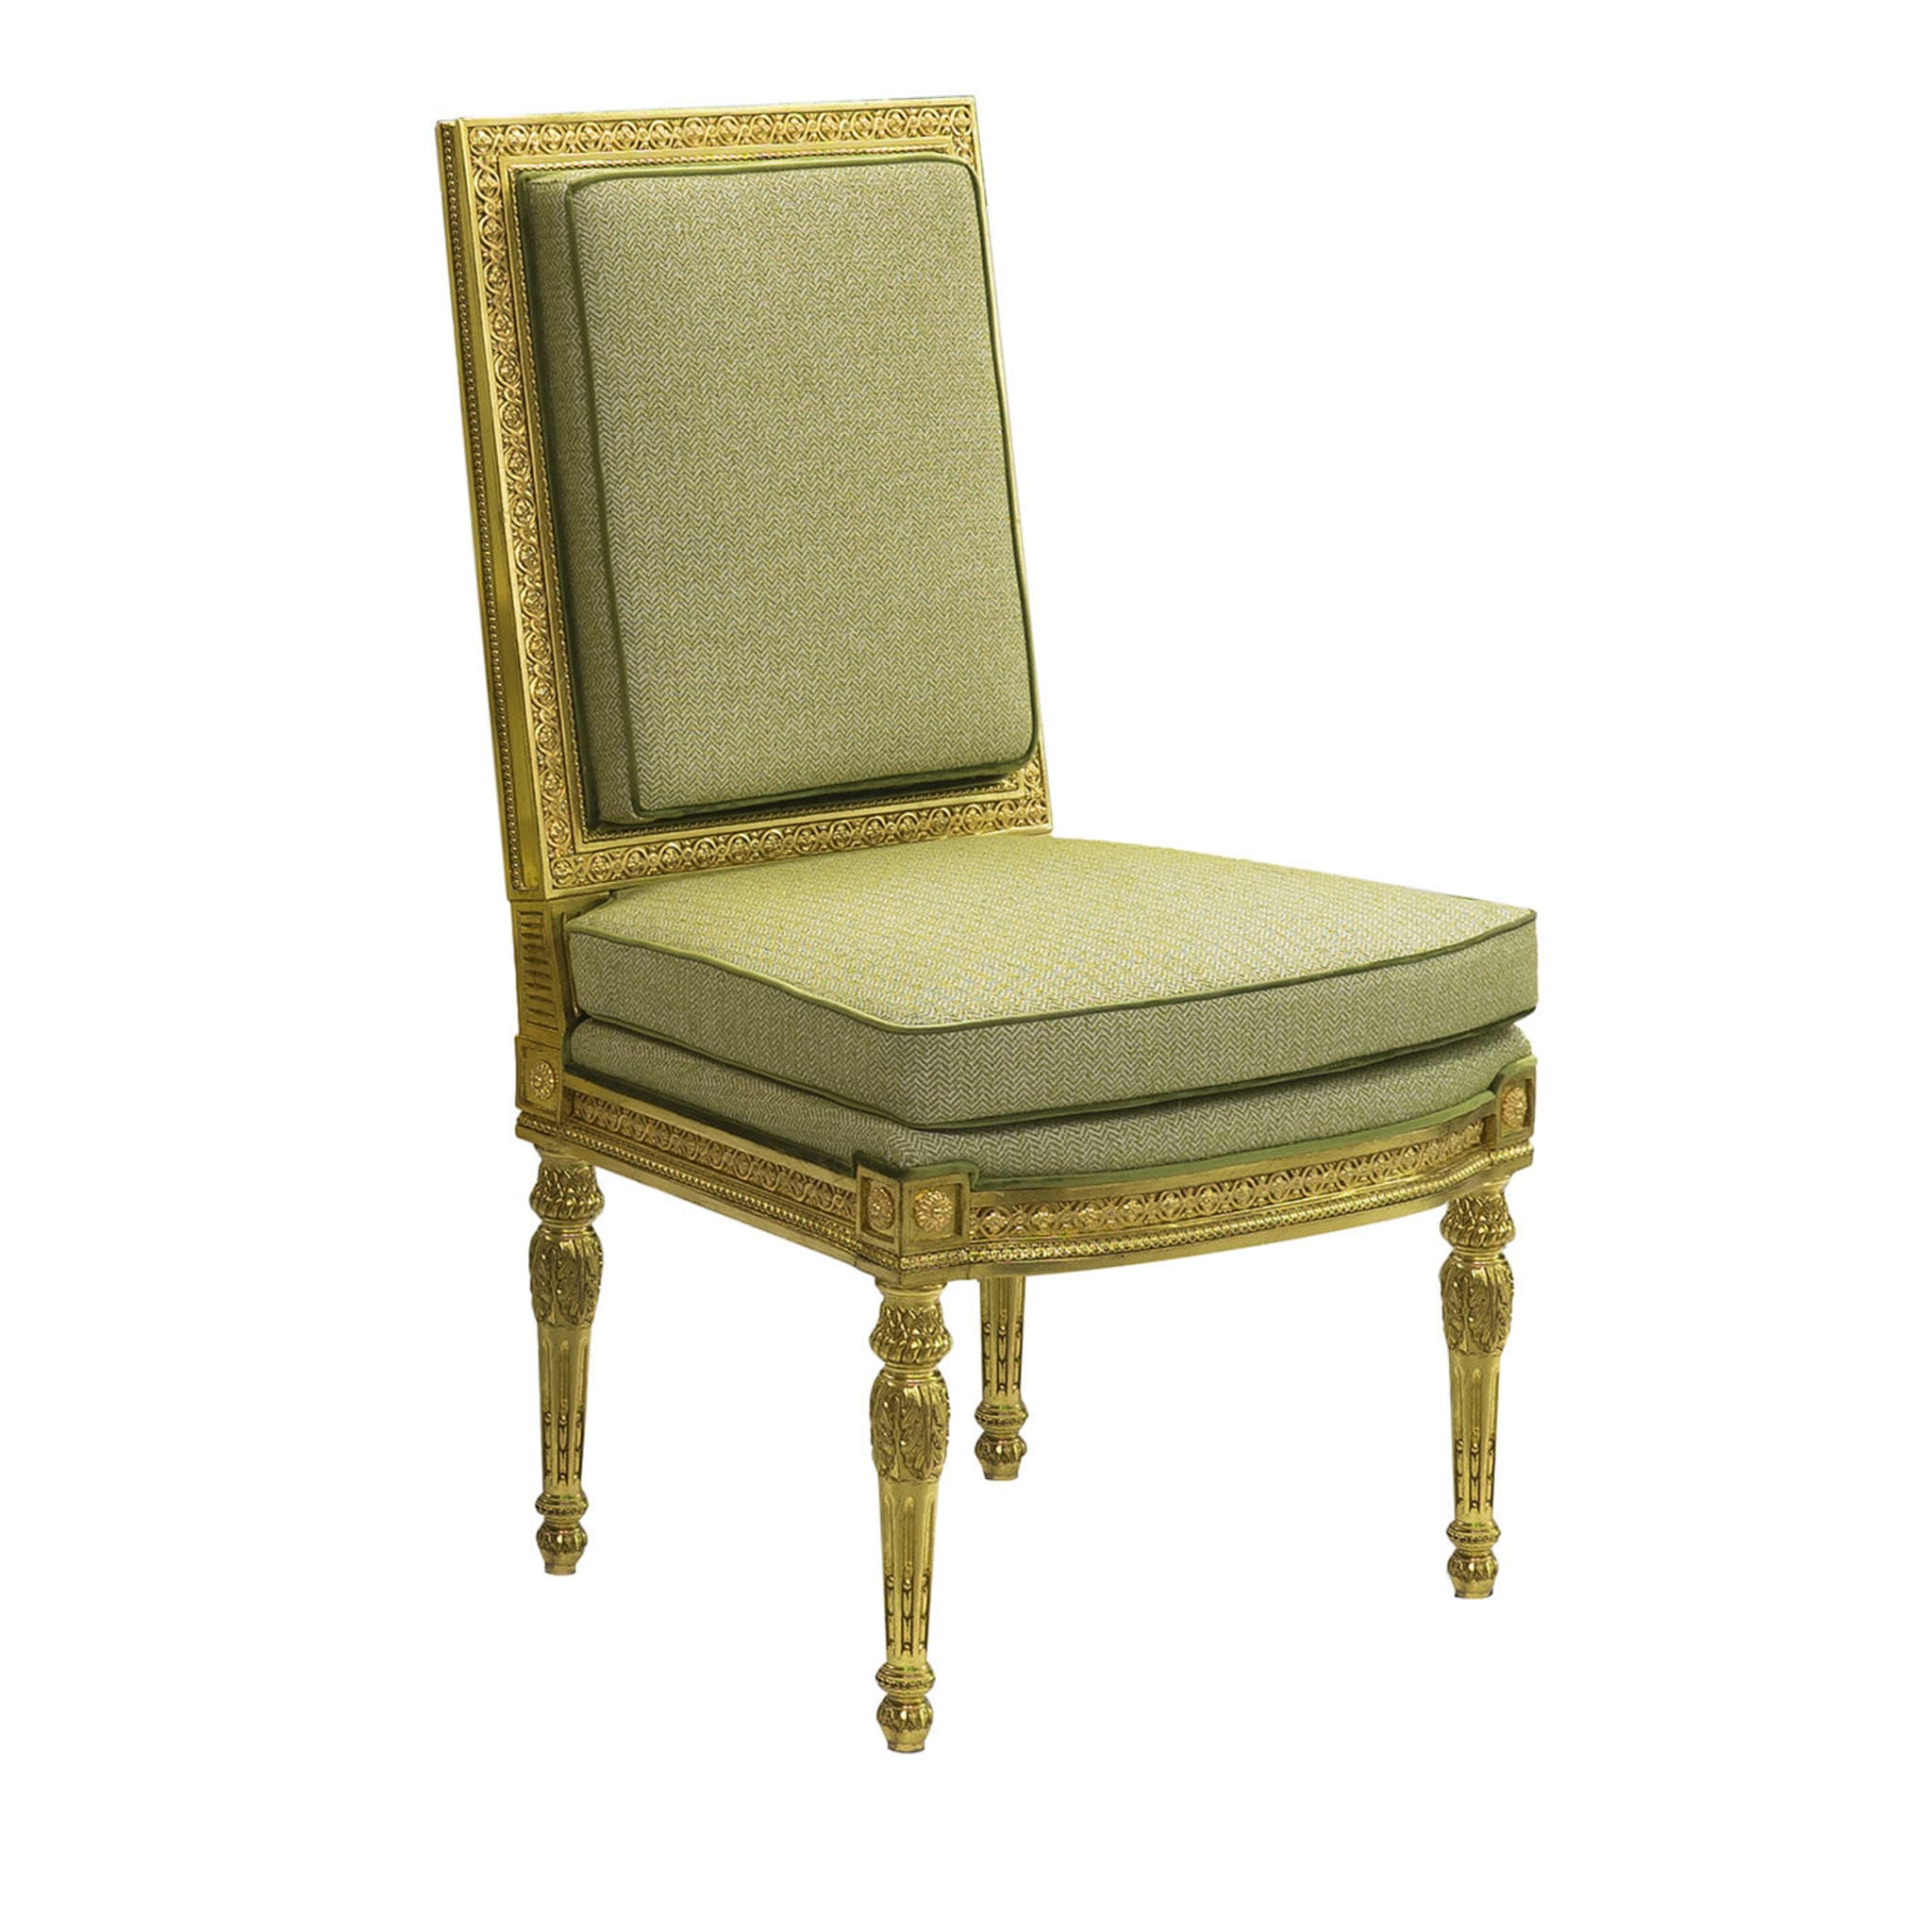 Chaise de style Louis XVI #2 - Vue principale